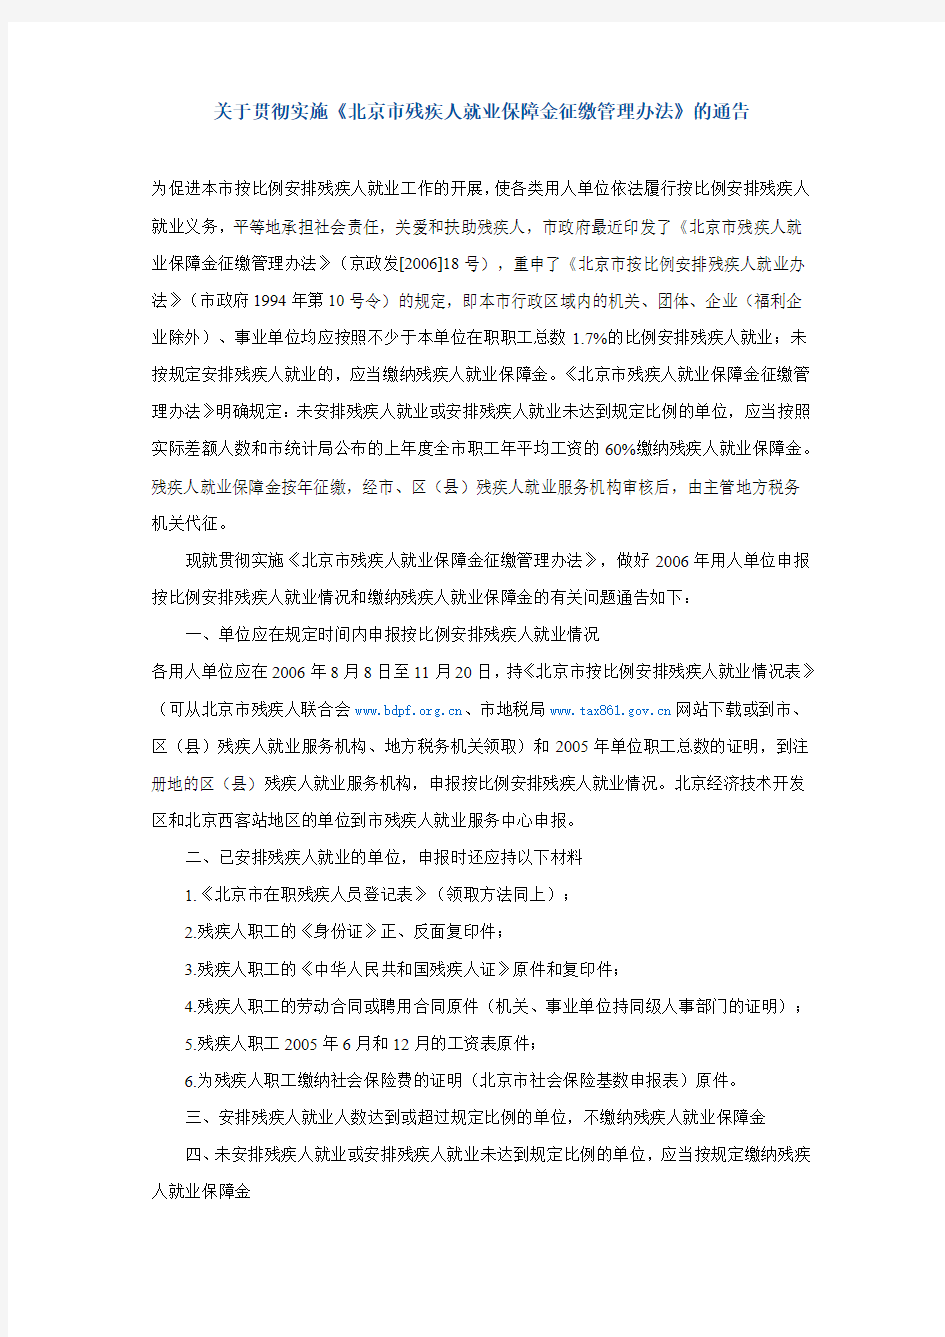 关于贯彻实施《北京市残疾人就业保障金征缴管理办法》的通告